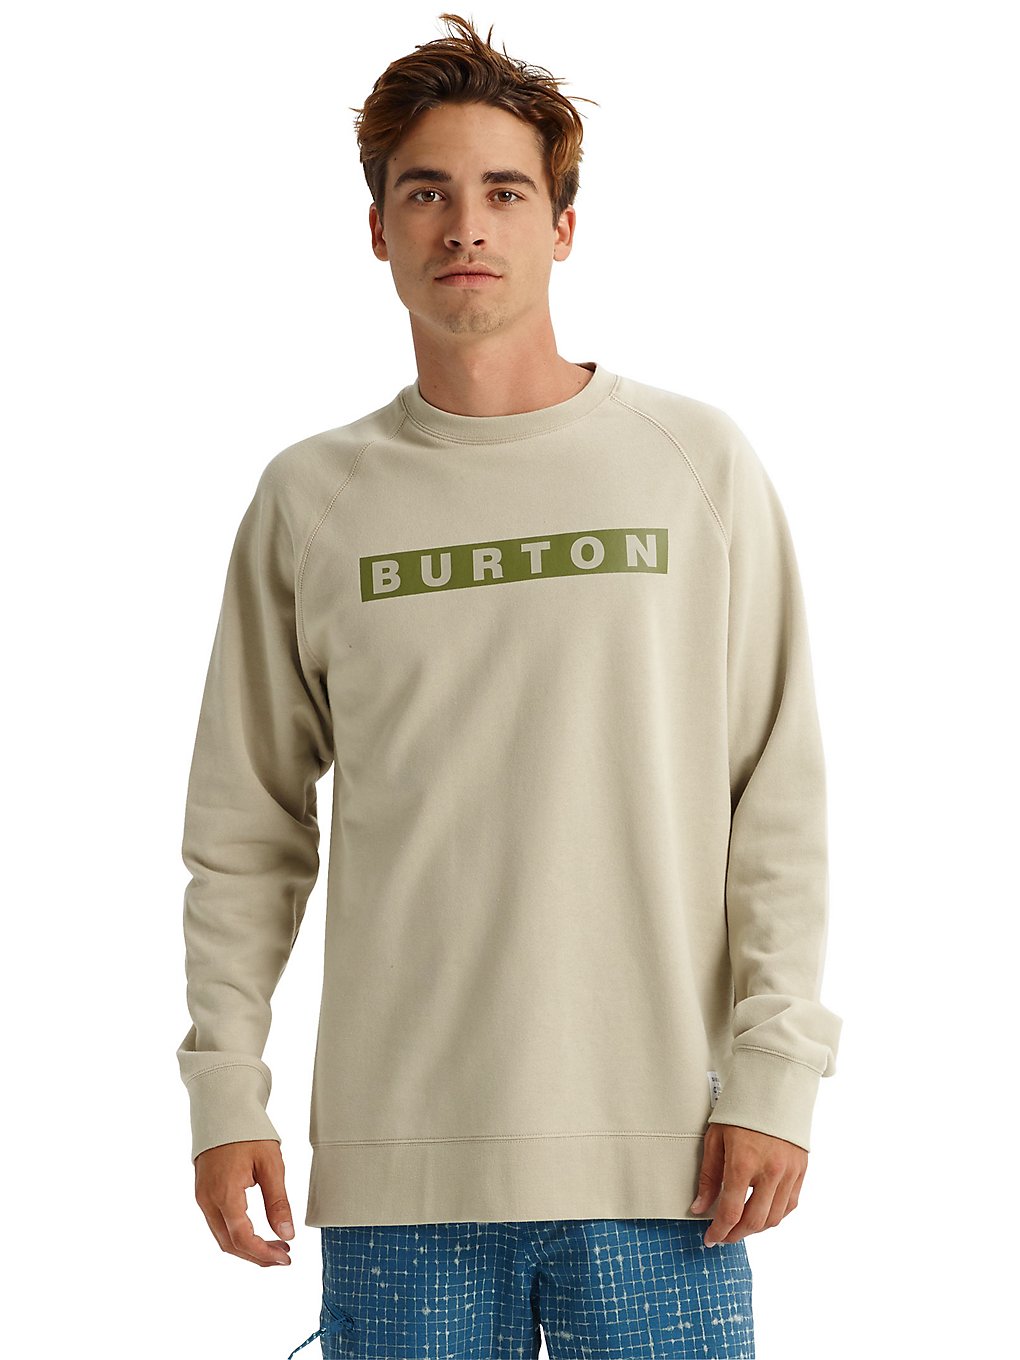 Burton vault crew sweater valkoinen, burton